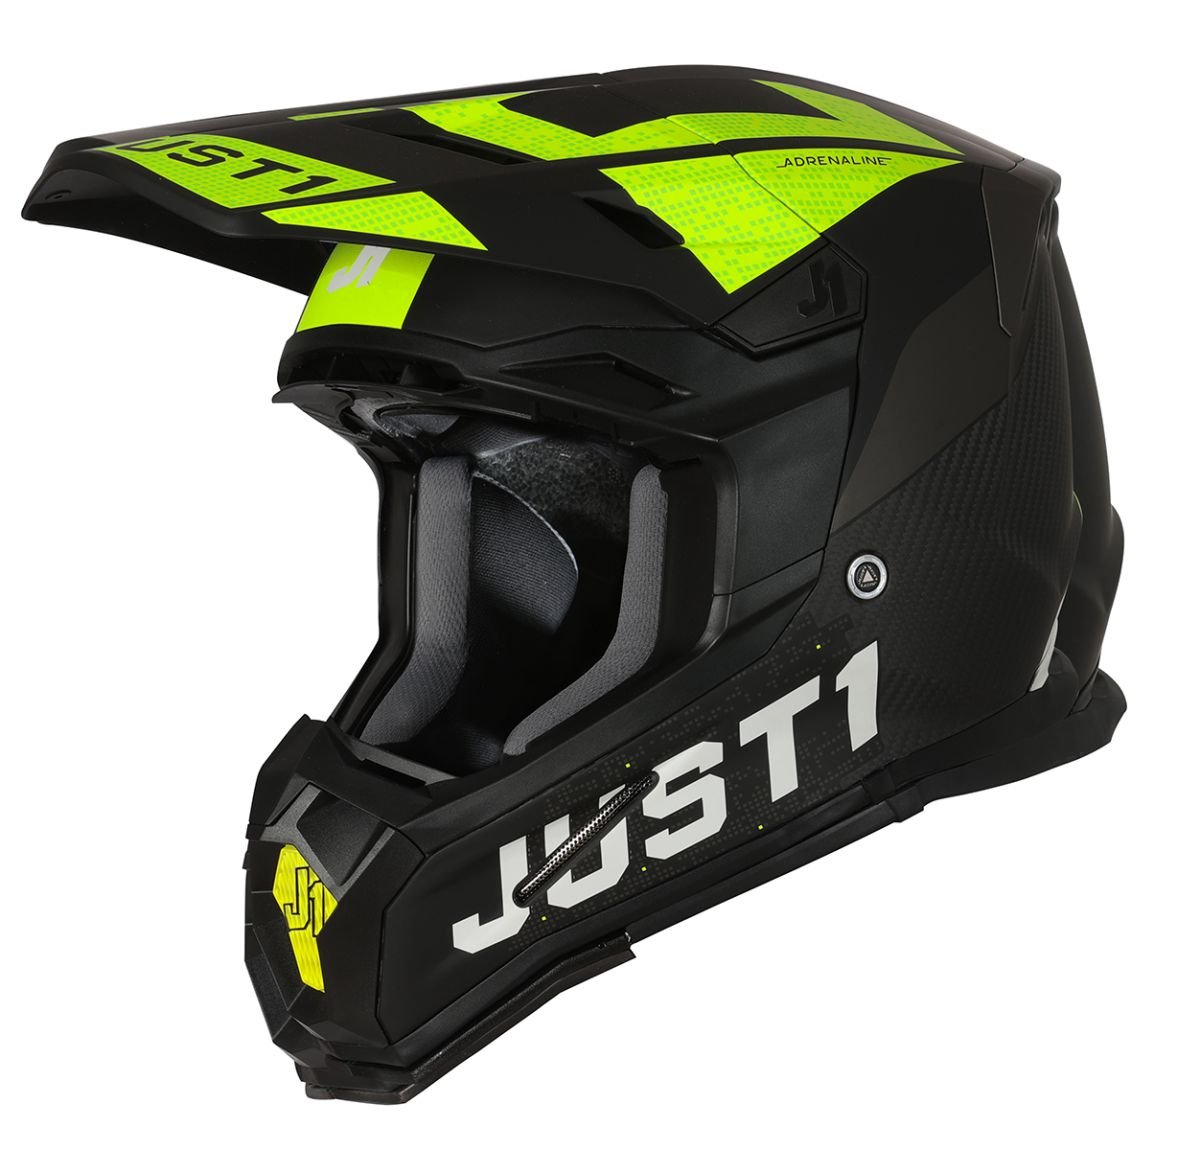 Image of Just1 Helmet J-22 Adrenaline Noir Jaune Fluo Carbon Mat Casque Cross Taille L